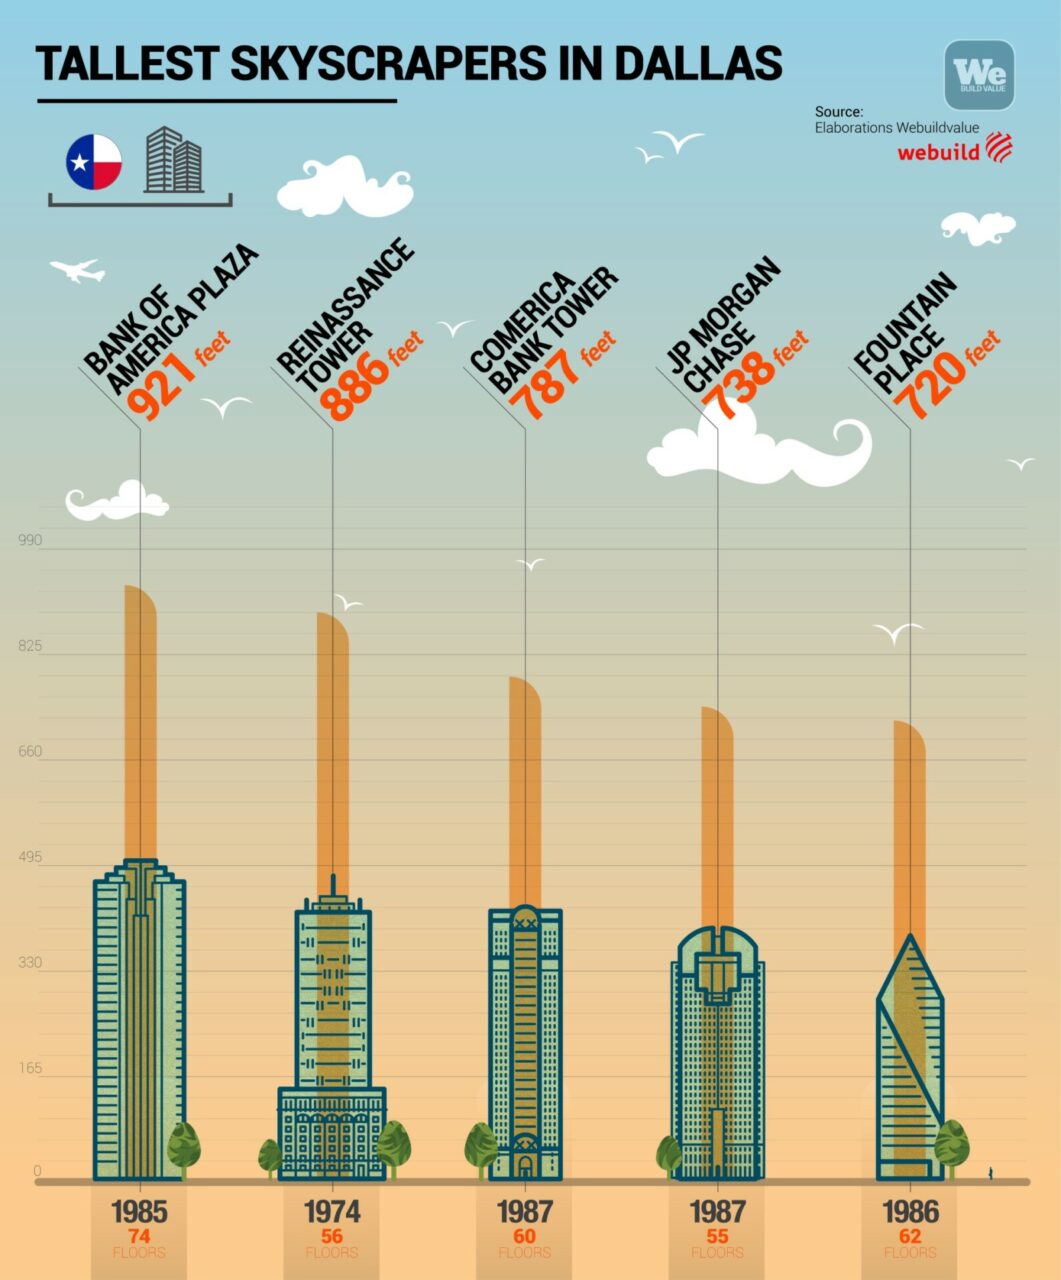 Tallest skyscrapers in Dallas